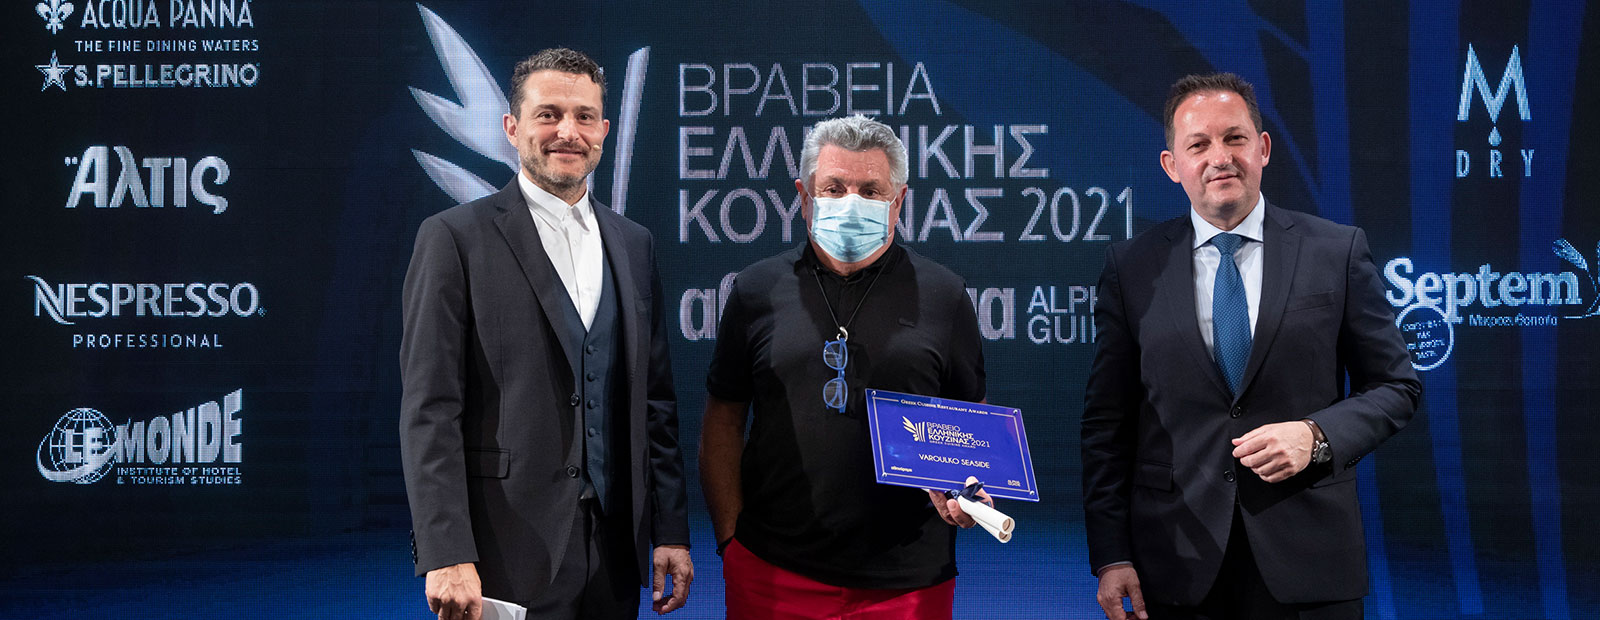 Βραβεία Ελληνικής Κουζίνας 2021